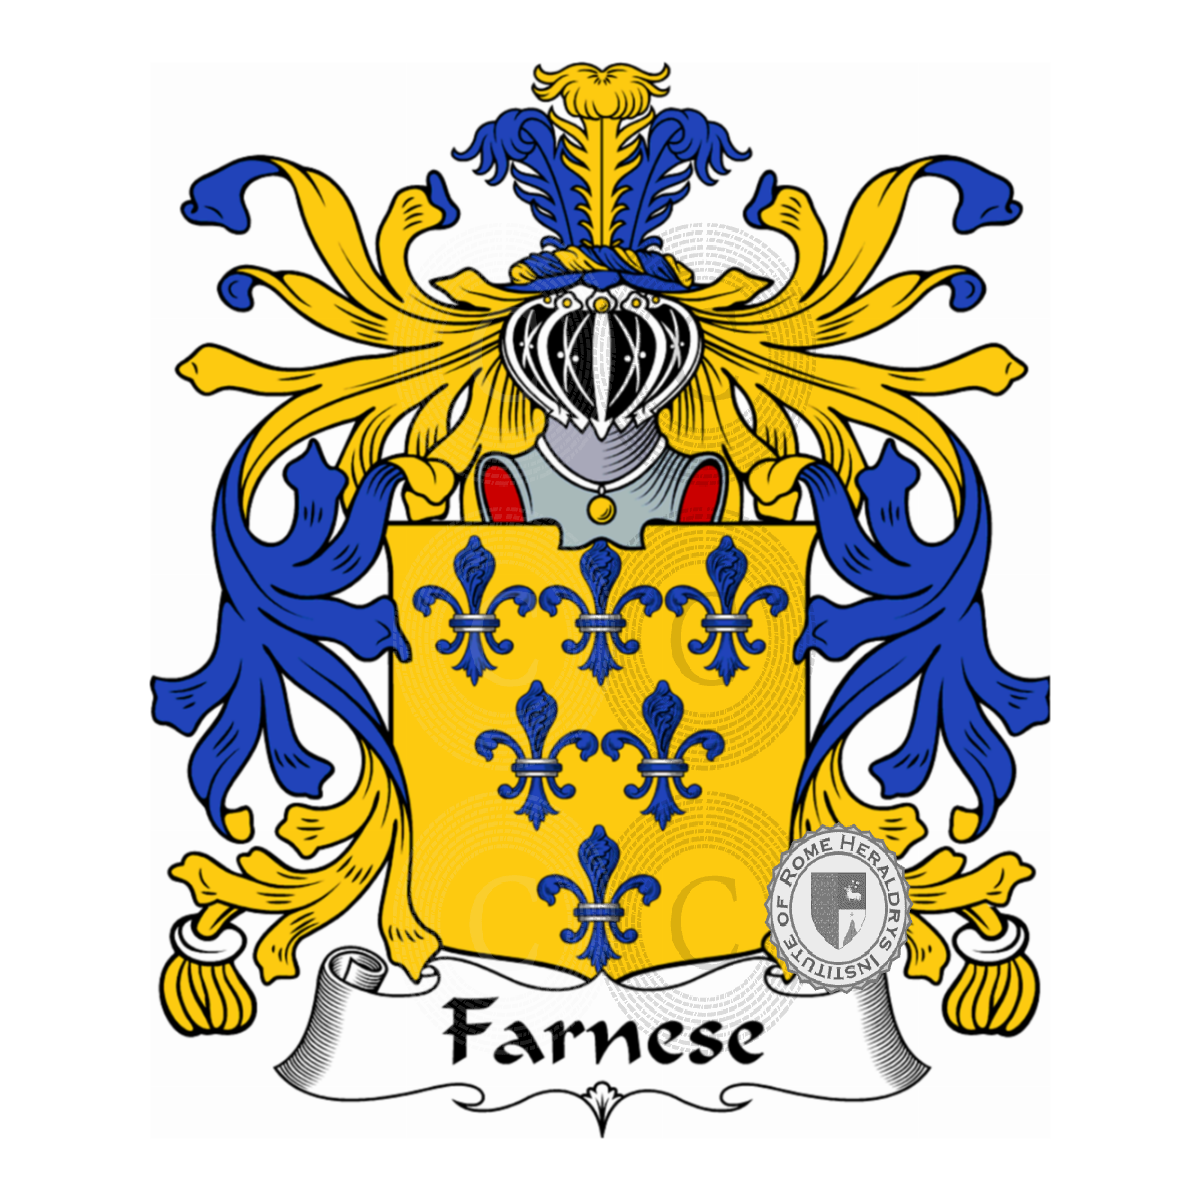 Wappen der FamilieFarnese